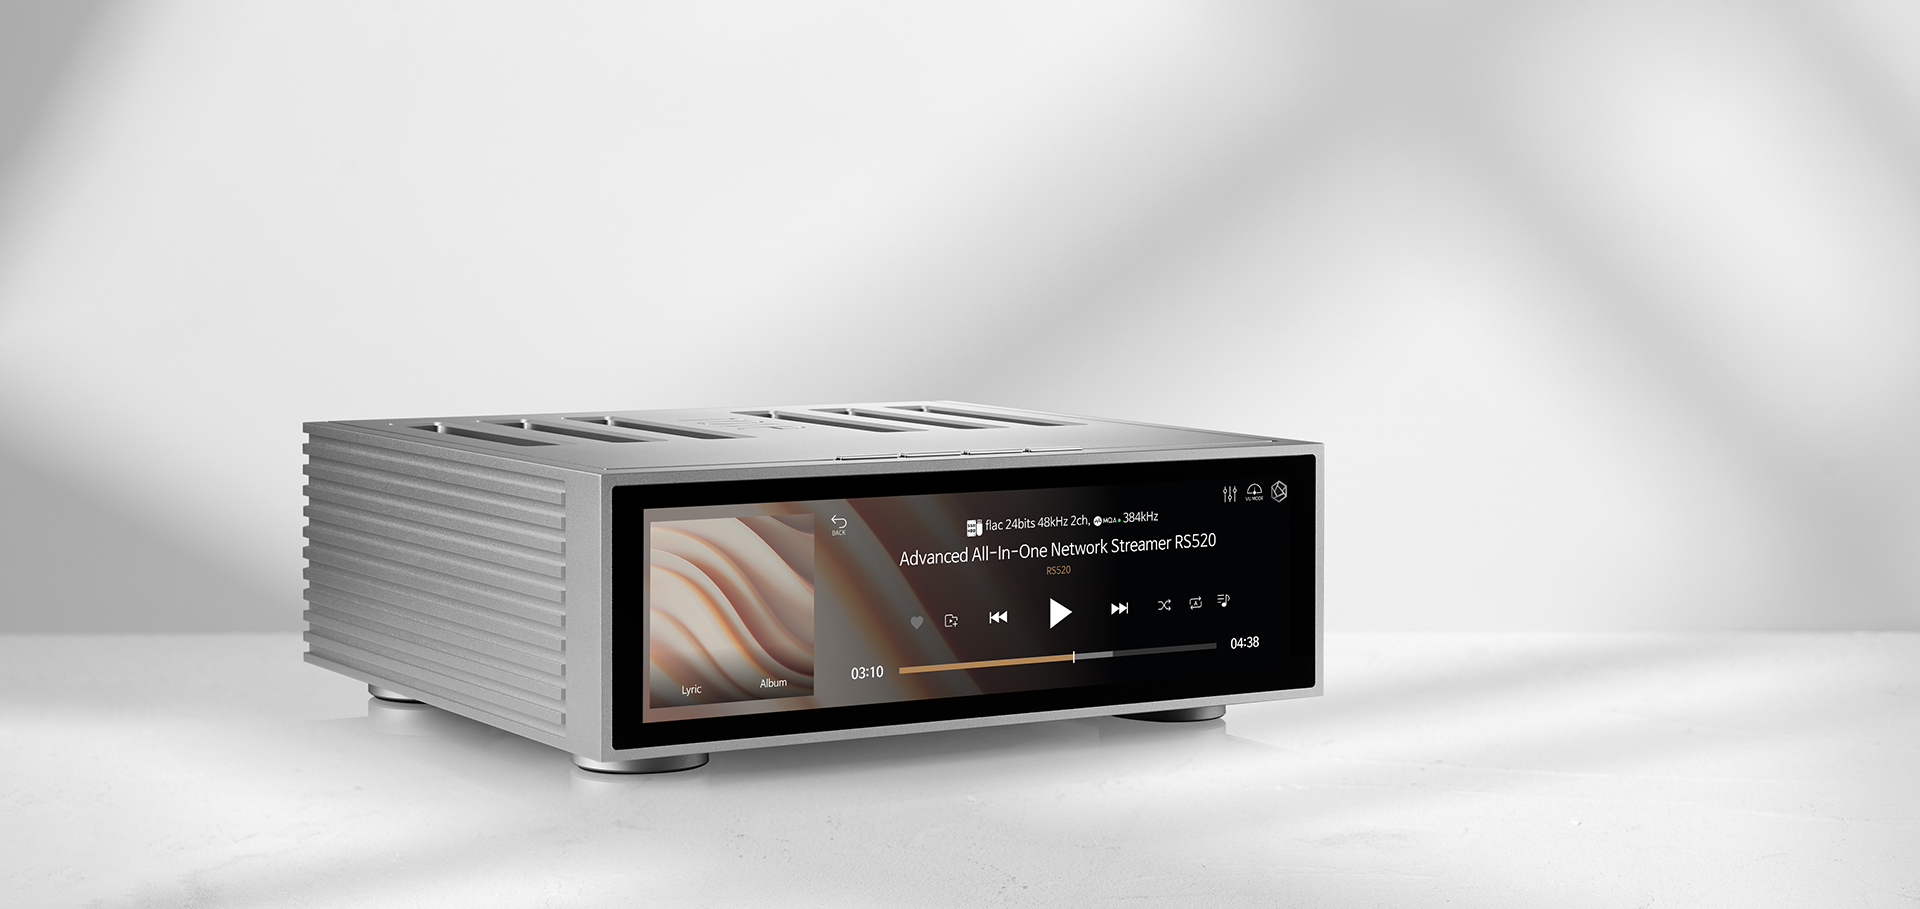 El nuevo amplificador integrado de HiFi Rose presume de un diseño exquisito  y el sonido más